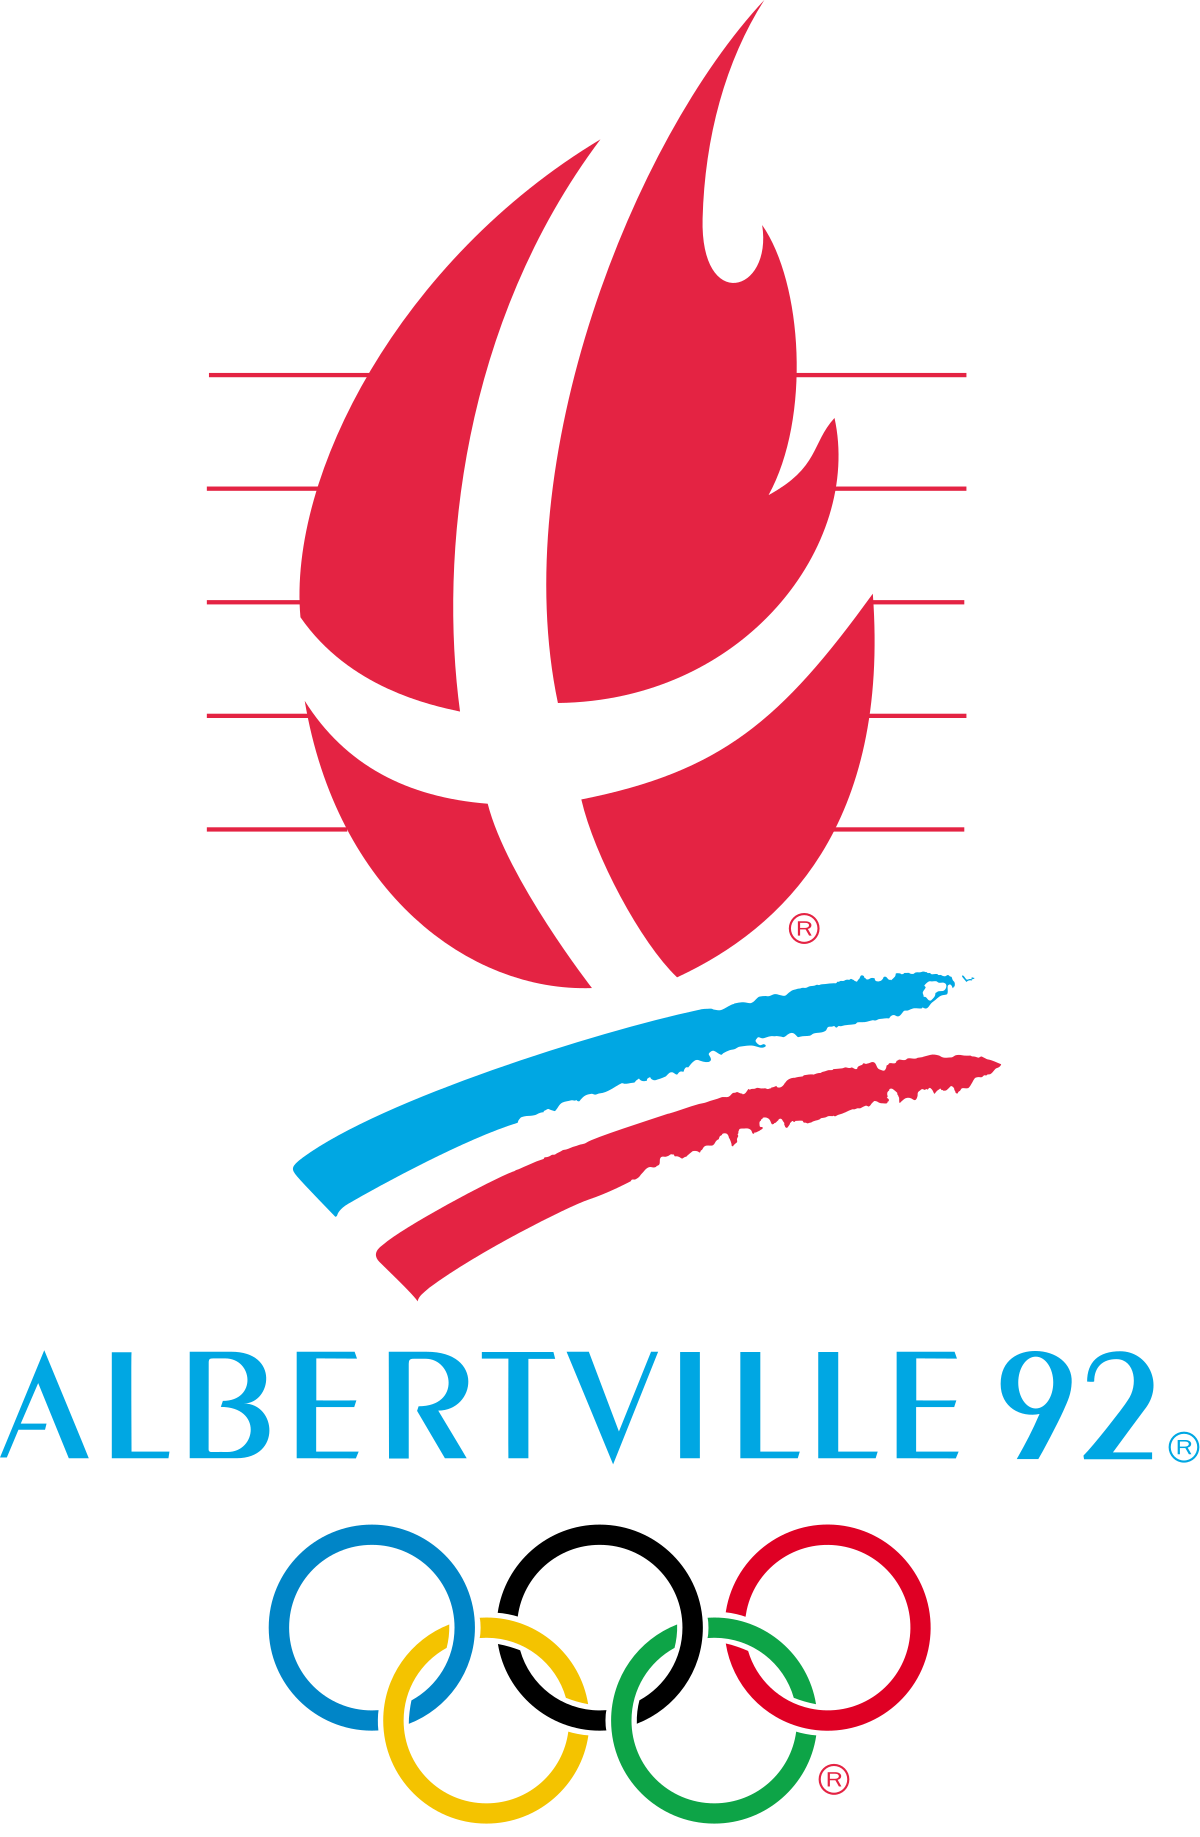 Albertville 1992